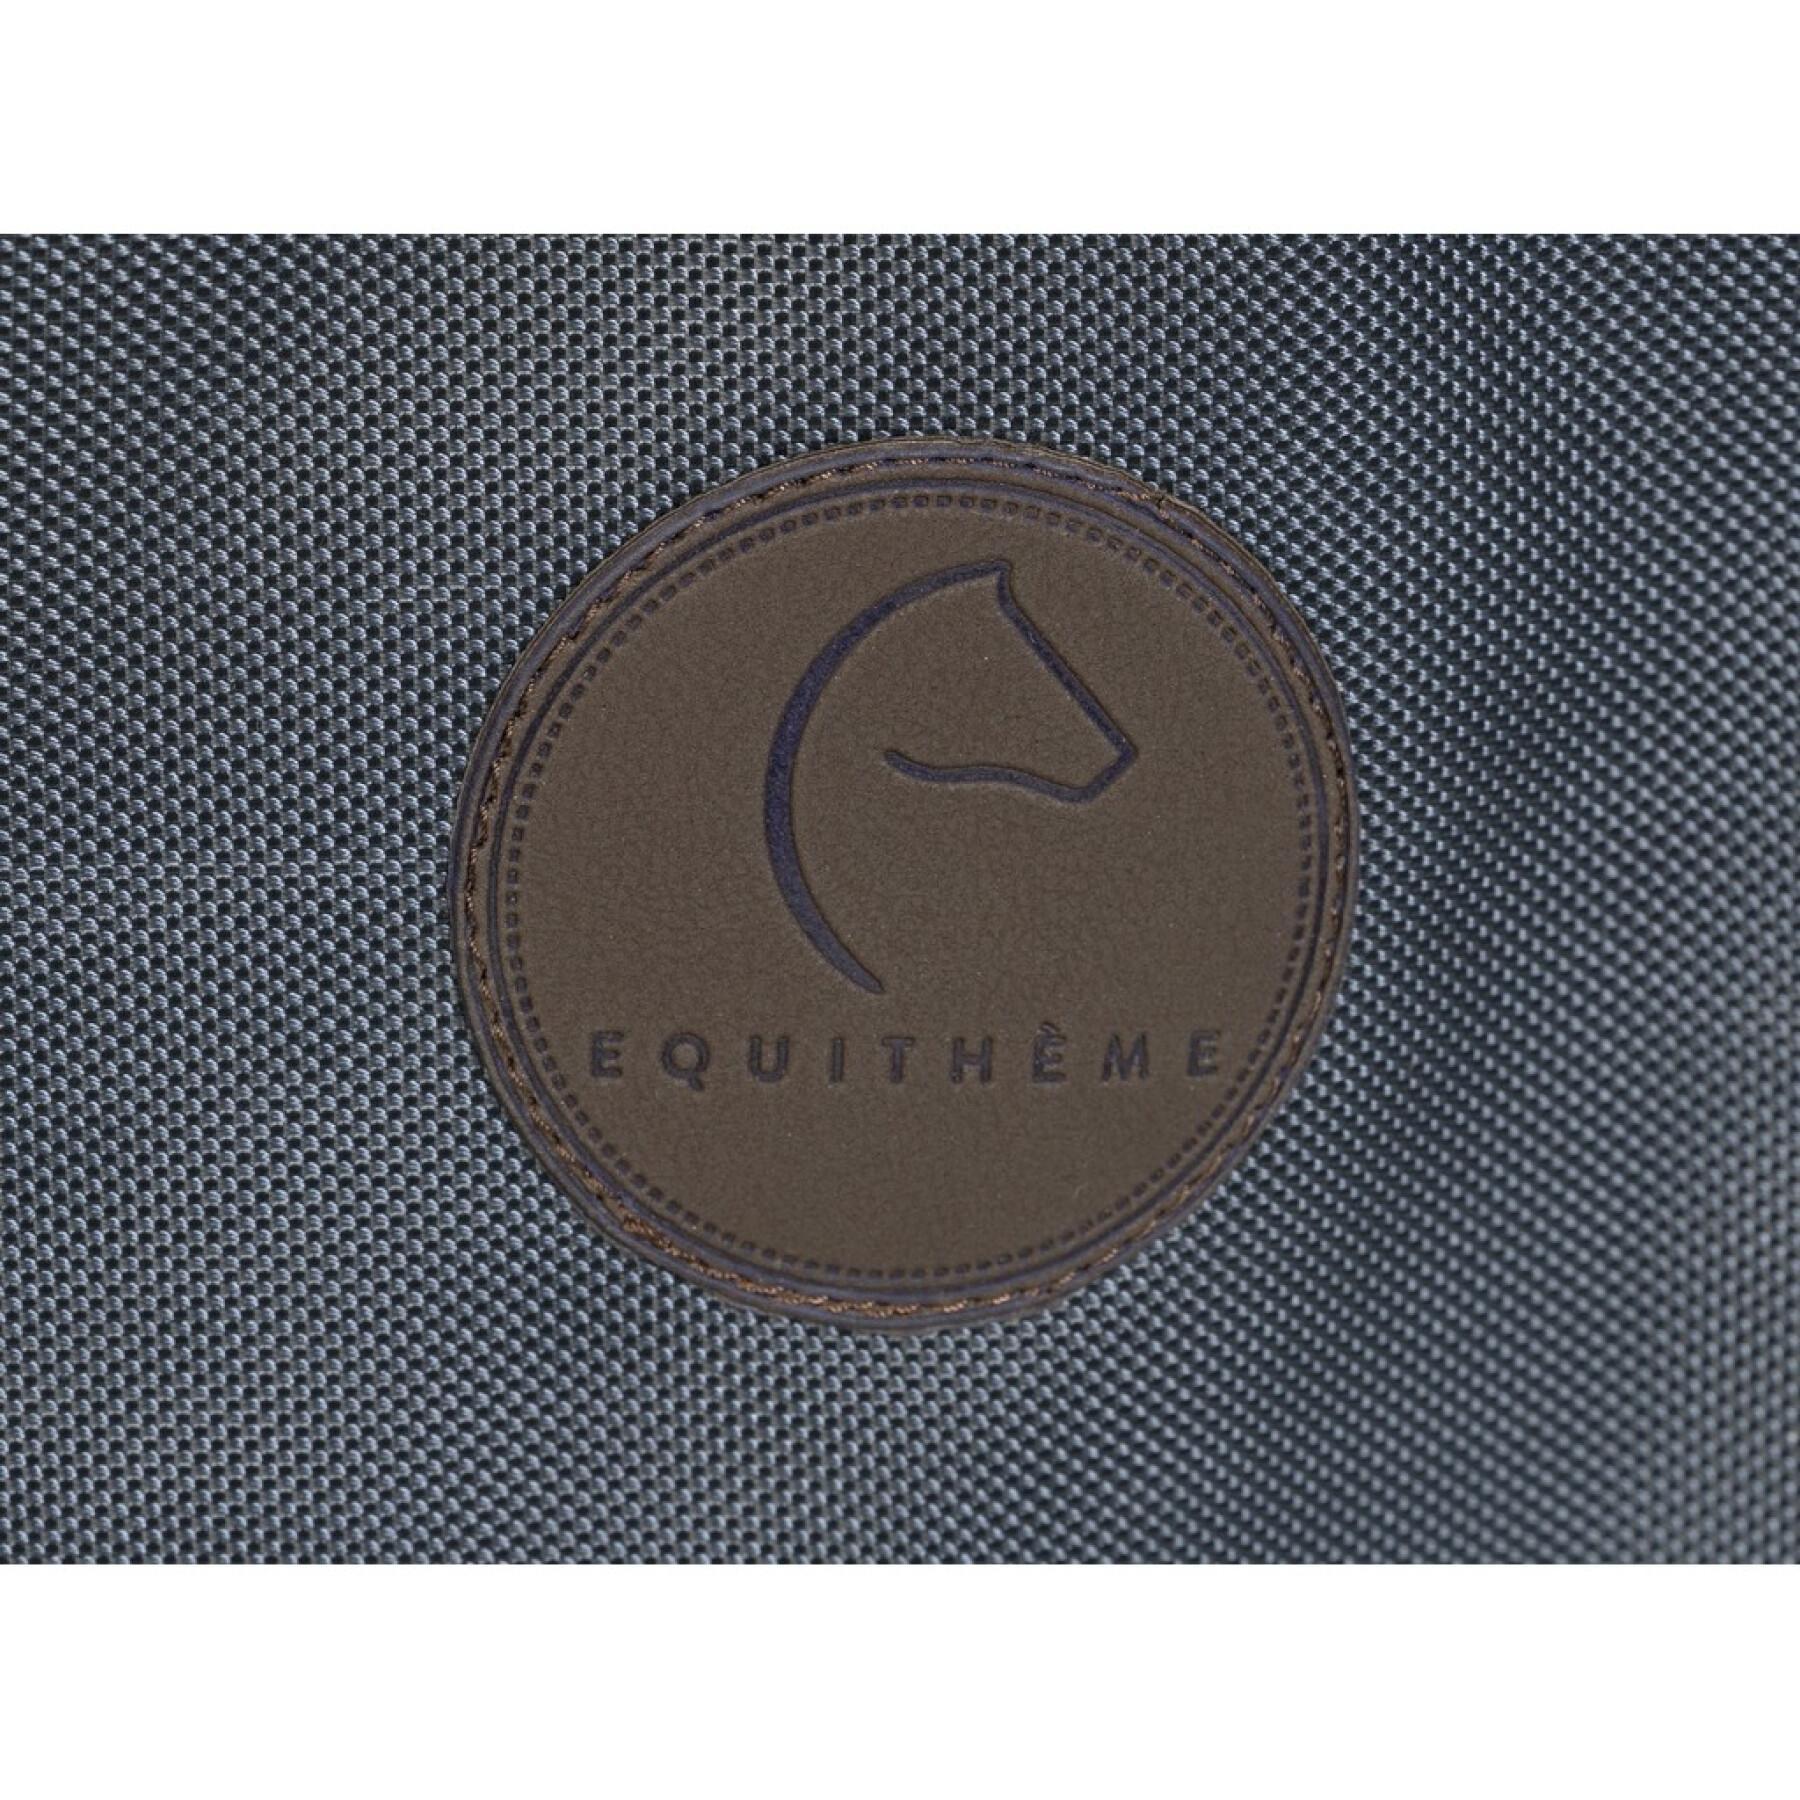 Deckeltasche für Pferd Equithème Premium